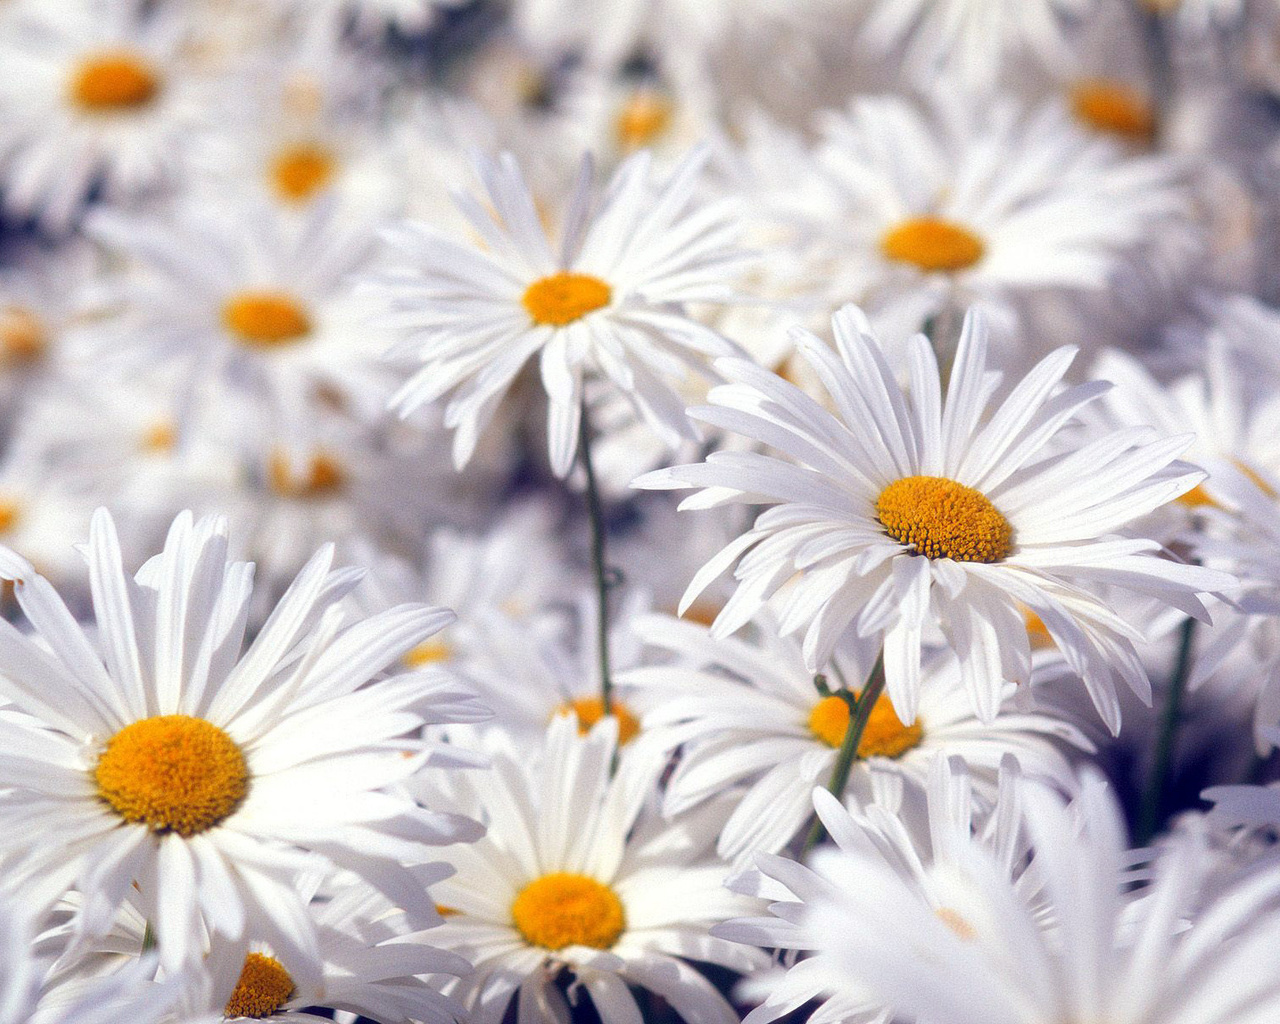 Fotografias y fotos para imprimir: Fotos de flores blancas